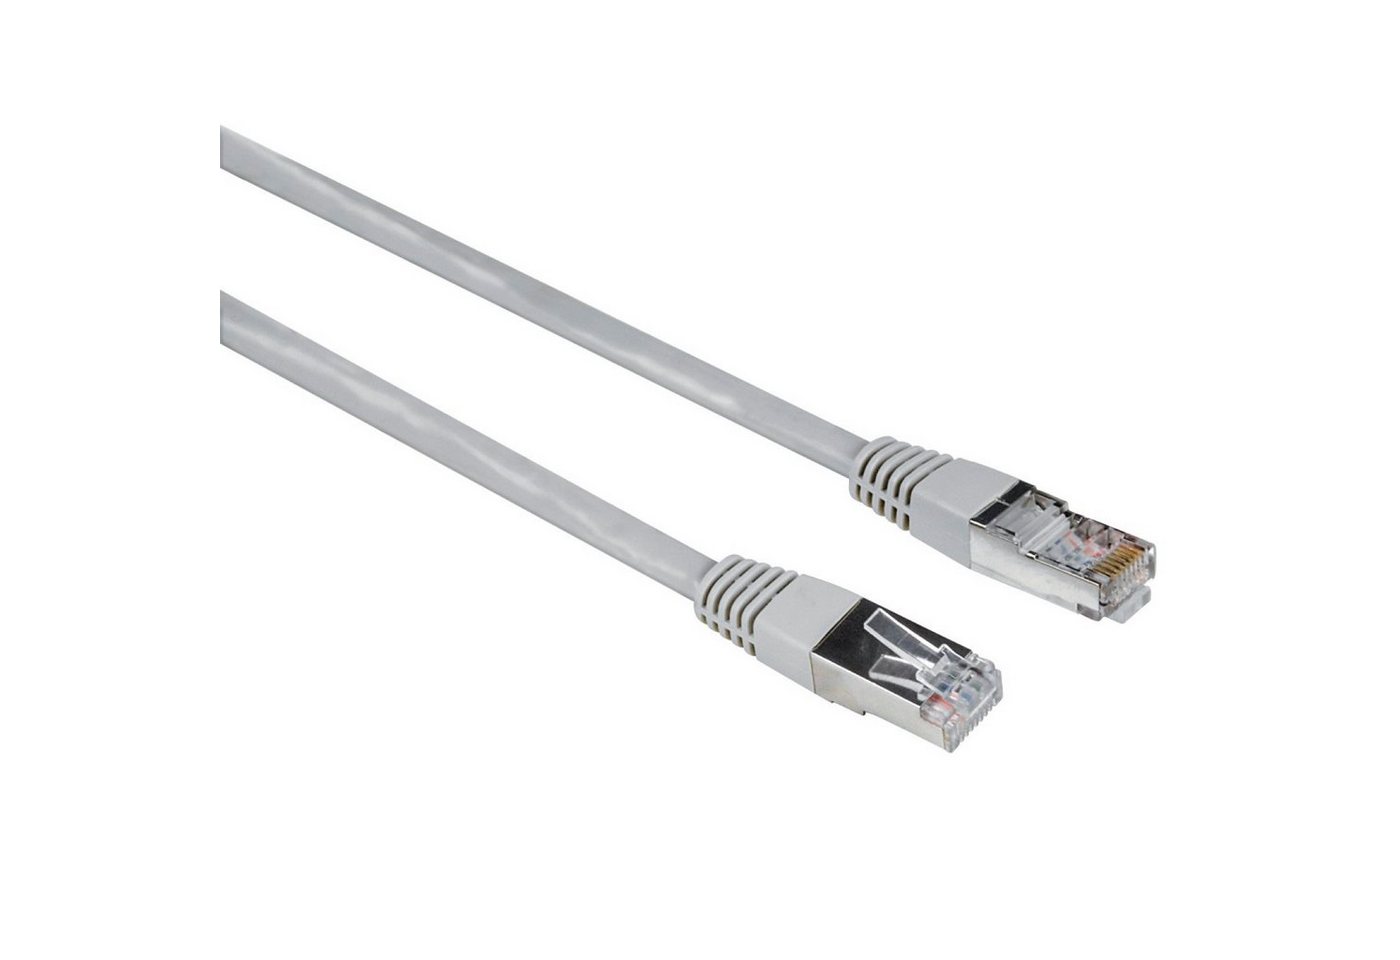 Hama 5m Netzwerk-Kabel Cat5e UTP Lan-Kabel LAN-Kabel, RJ45, Kein (500 cm), Patch-Kabel Cat 5e Gigabit Ethernet von Hama